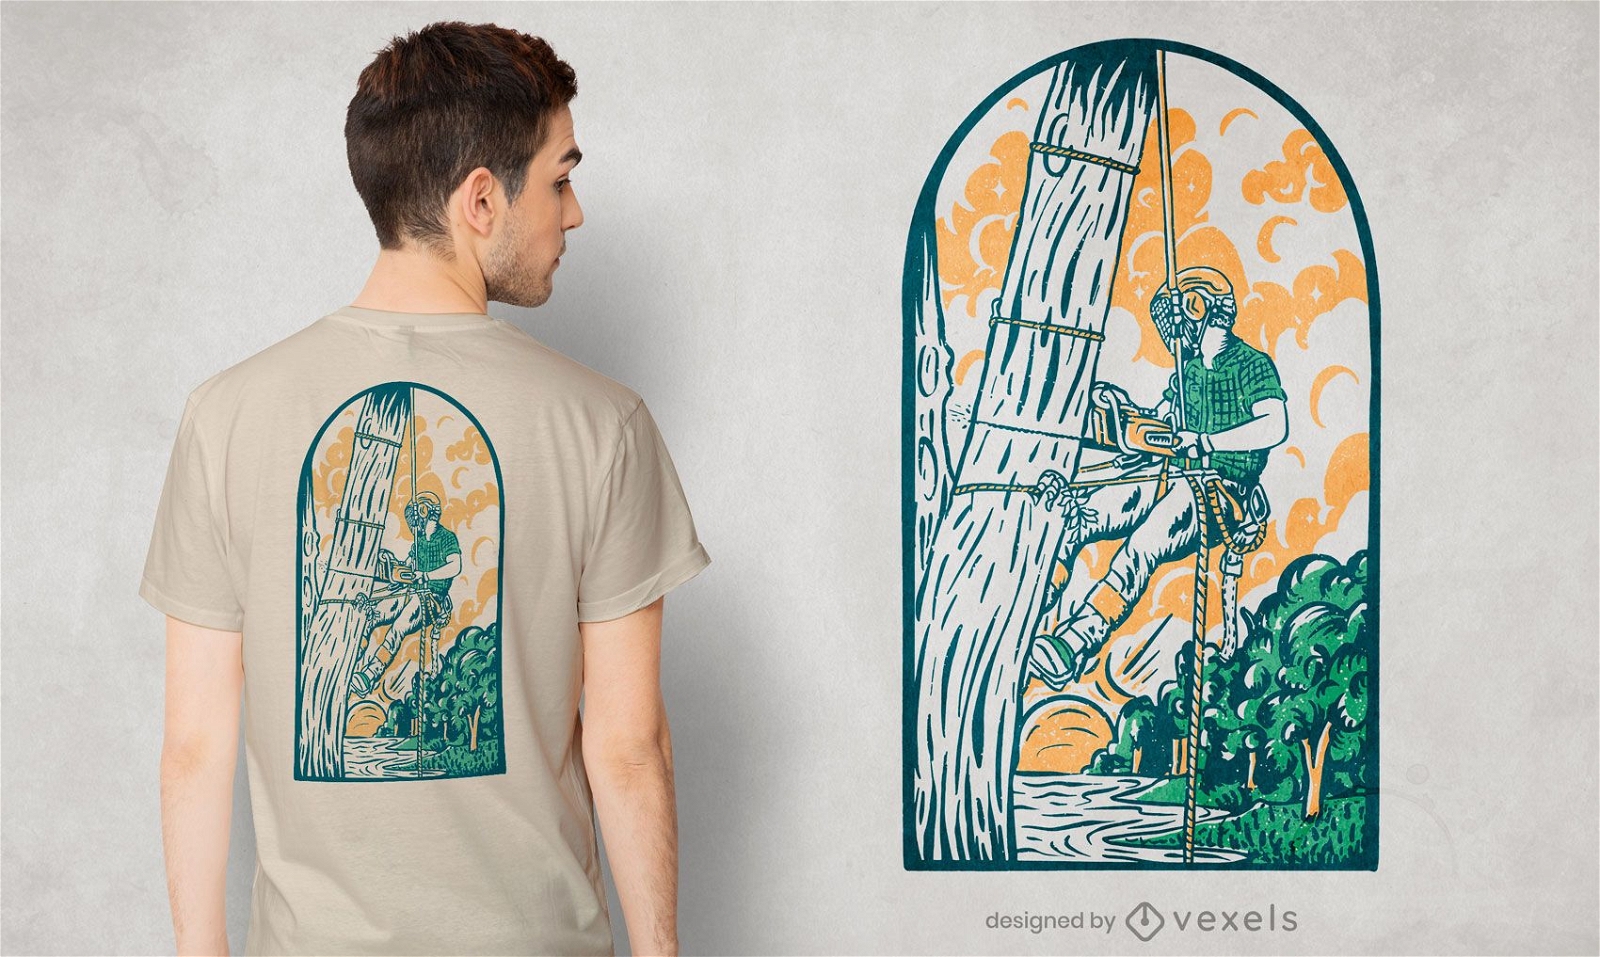 Arborist t-shirt design